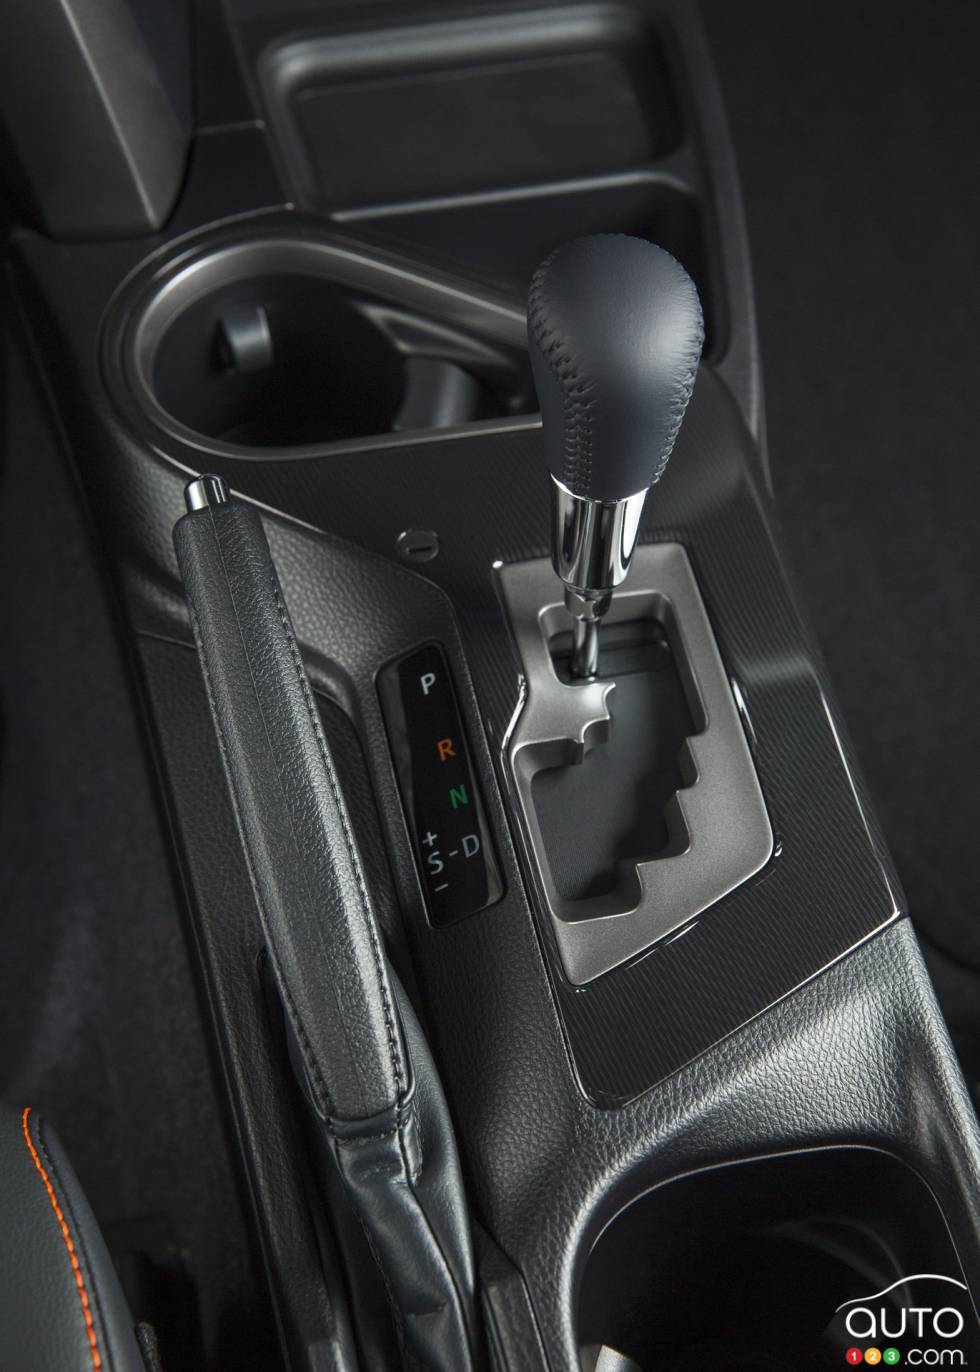 2016 Toyota RAV4 shift knob